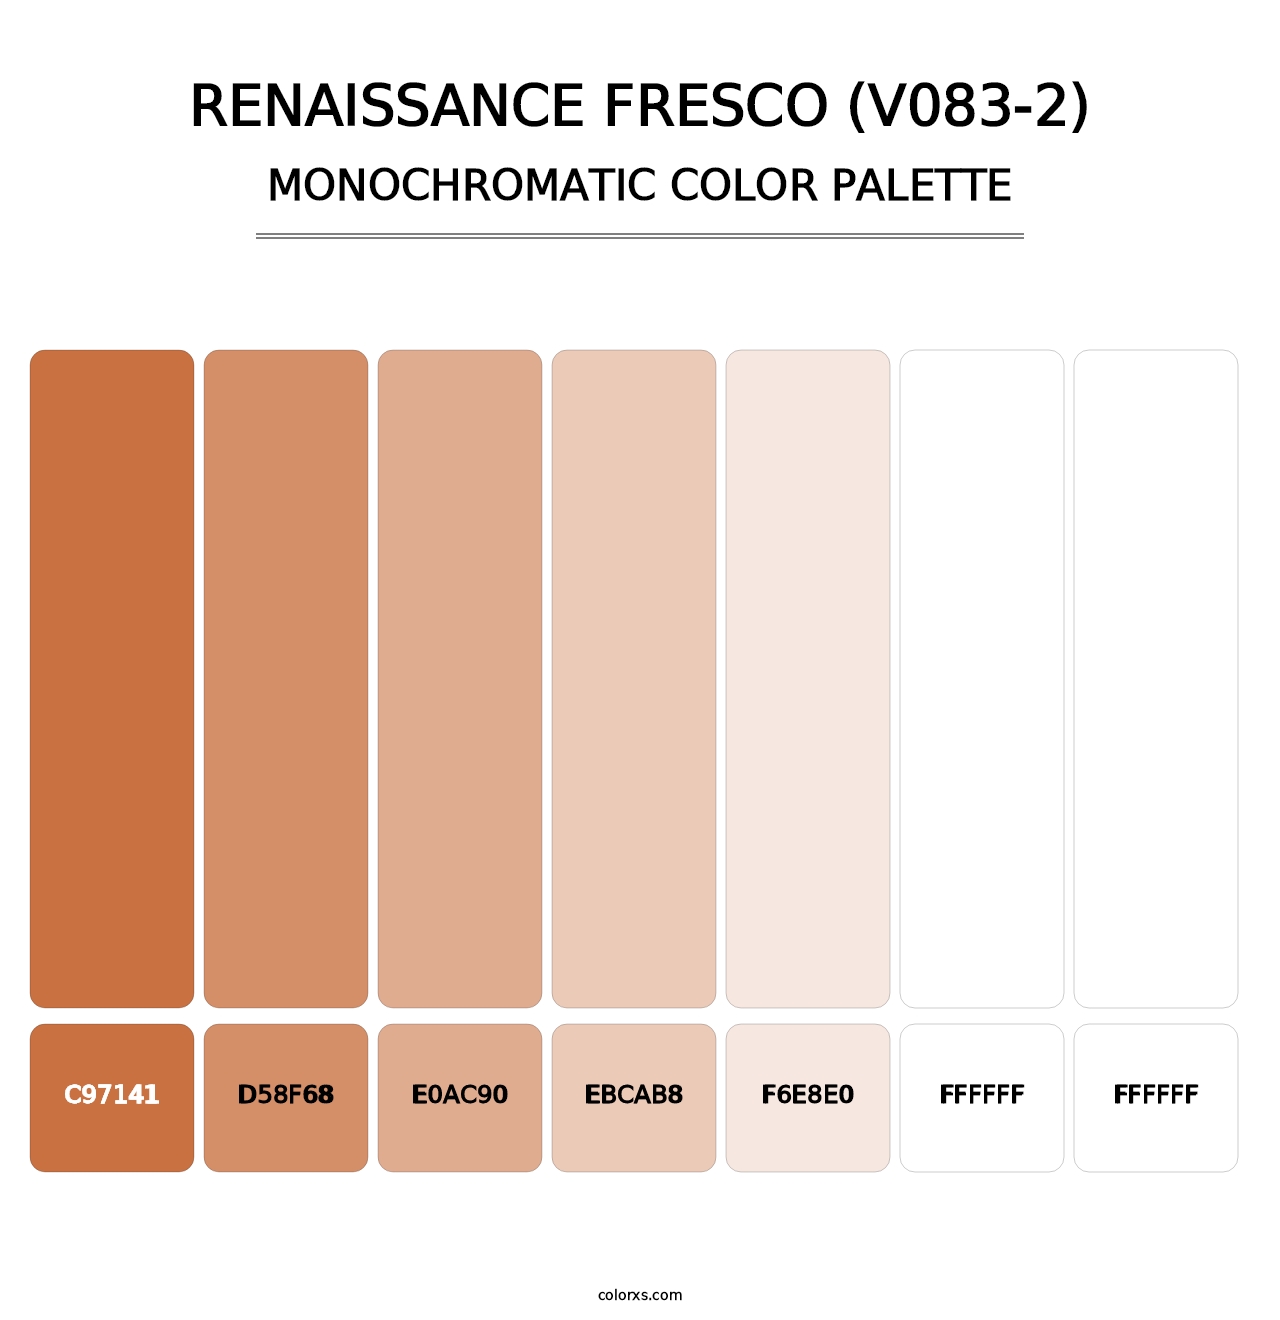 Renaissance Fresco (V083-2) - Monochromatic Color Palette